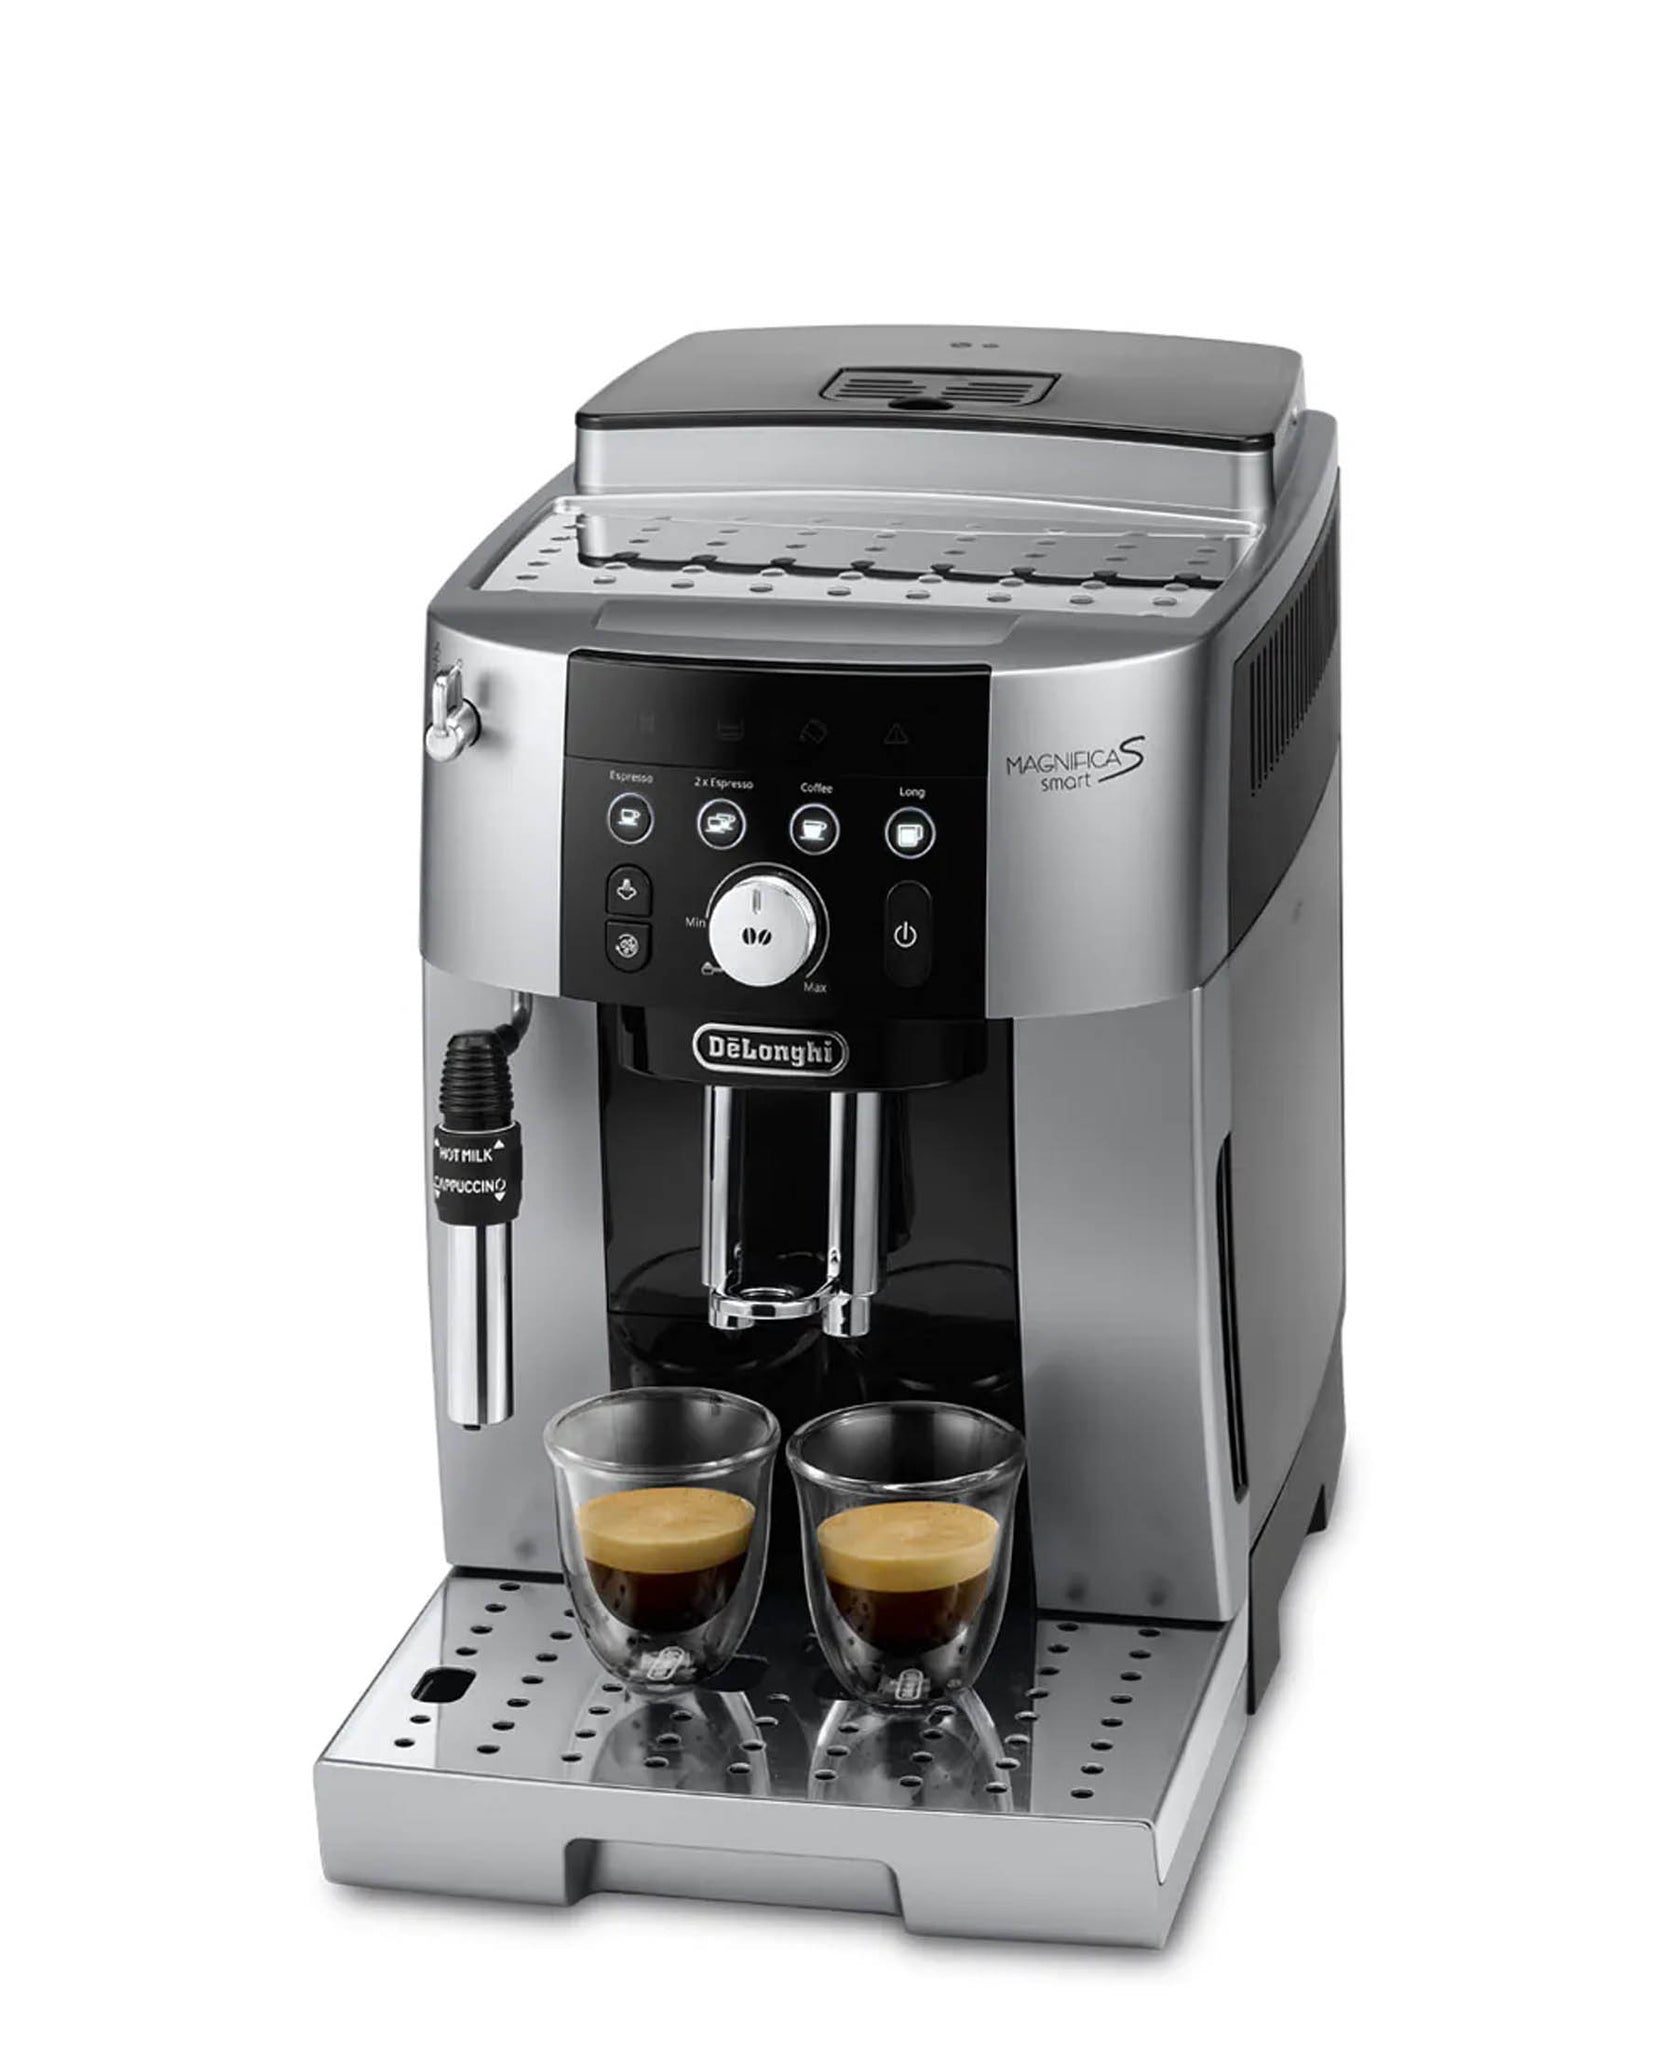 DeLonghi Magnifica S Smart Espresso Machine - Silver & Black